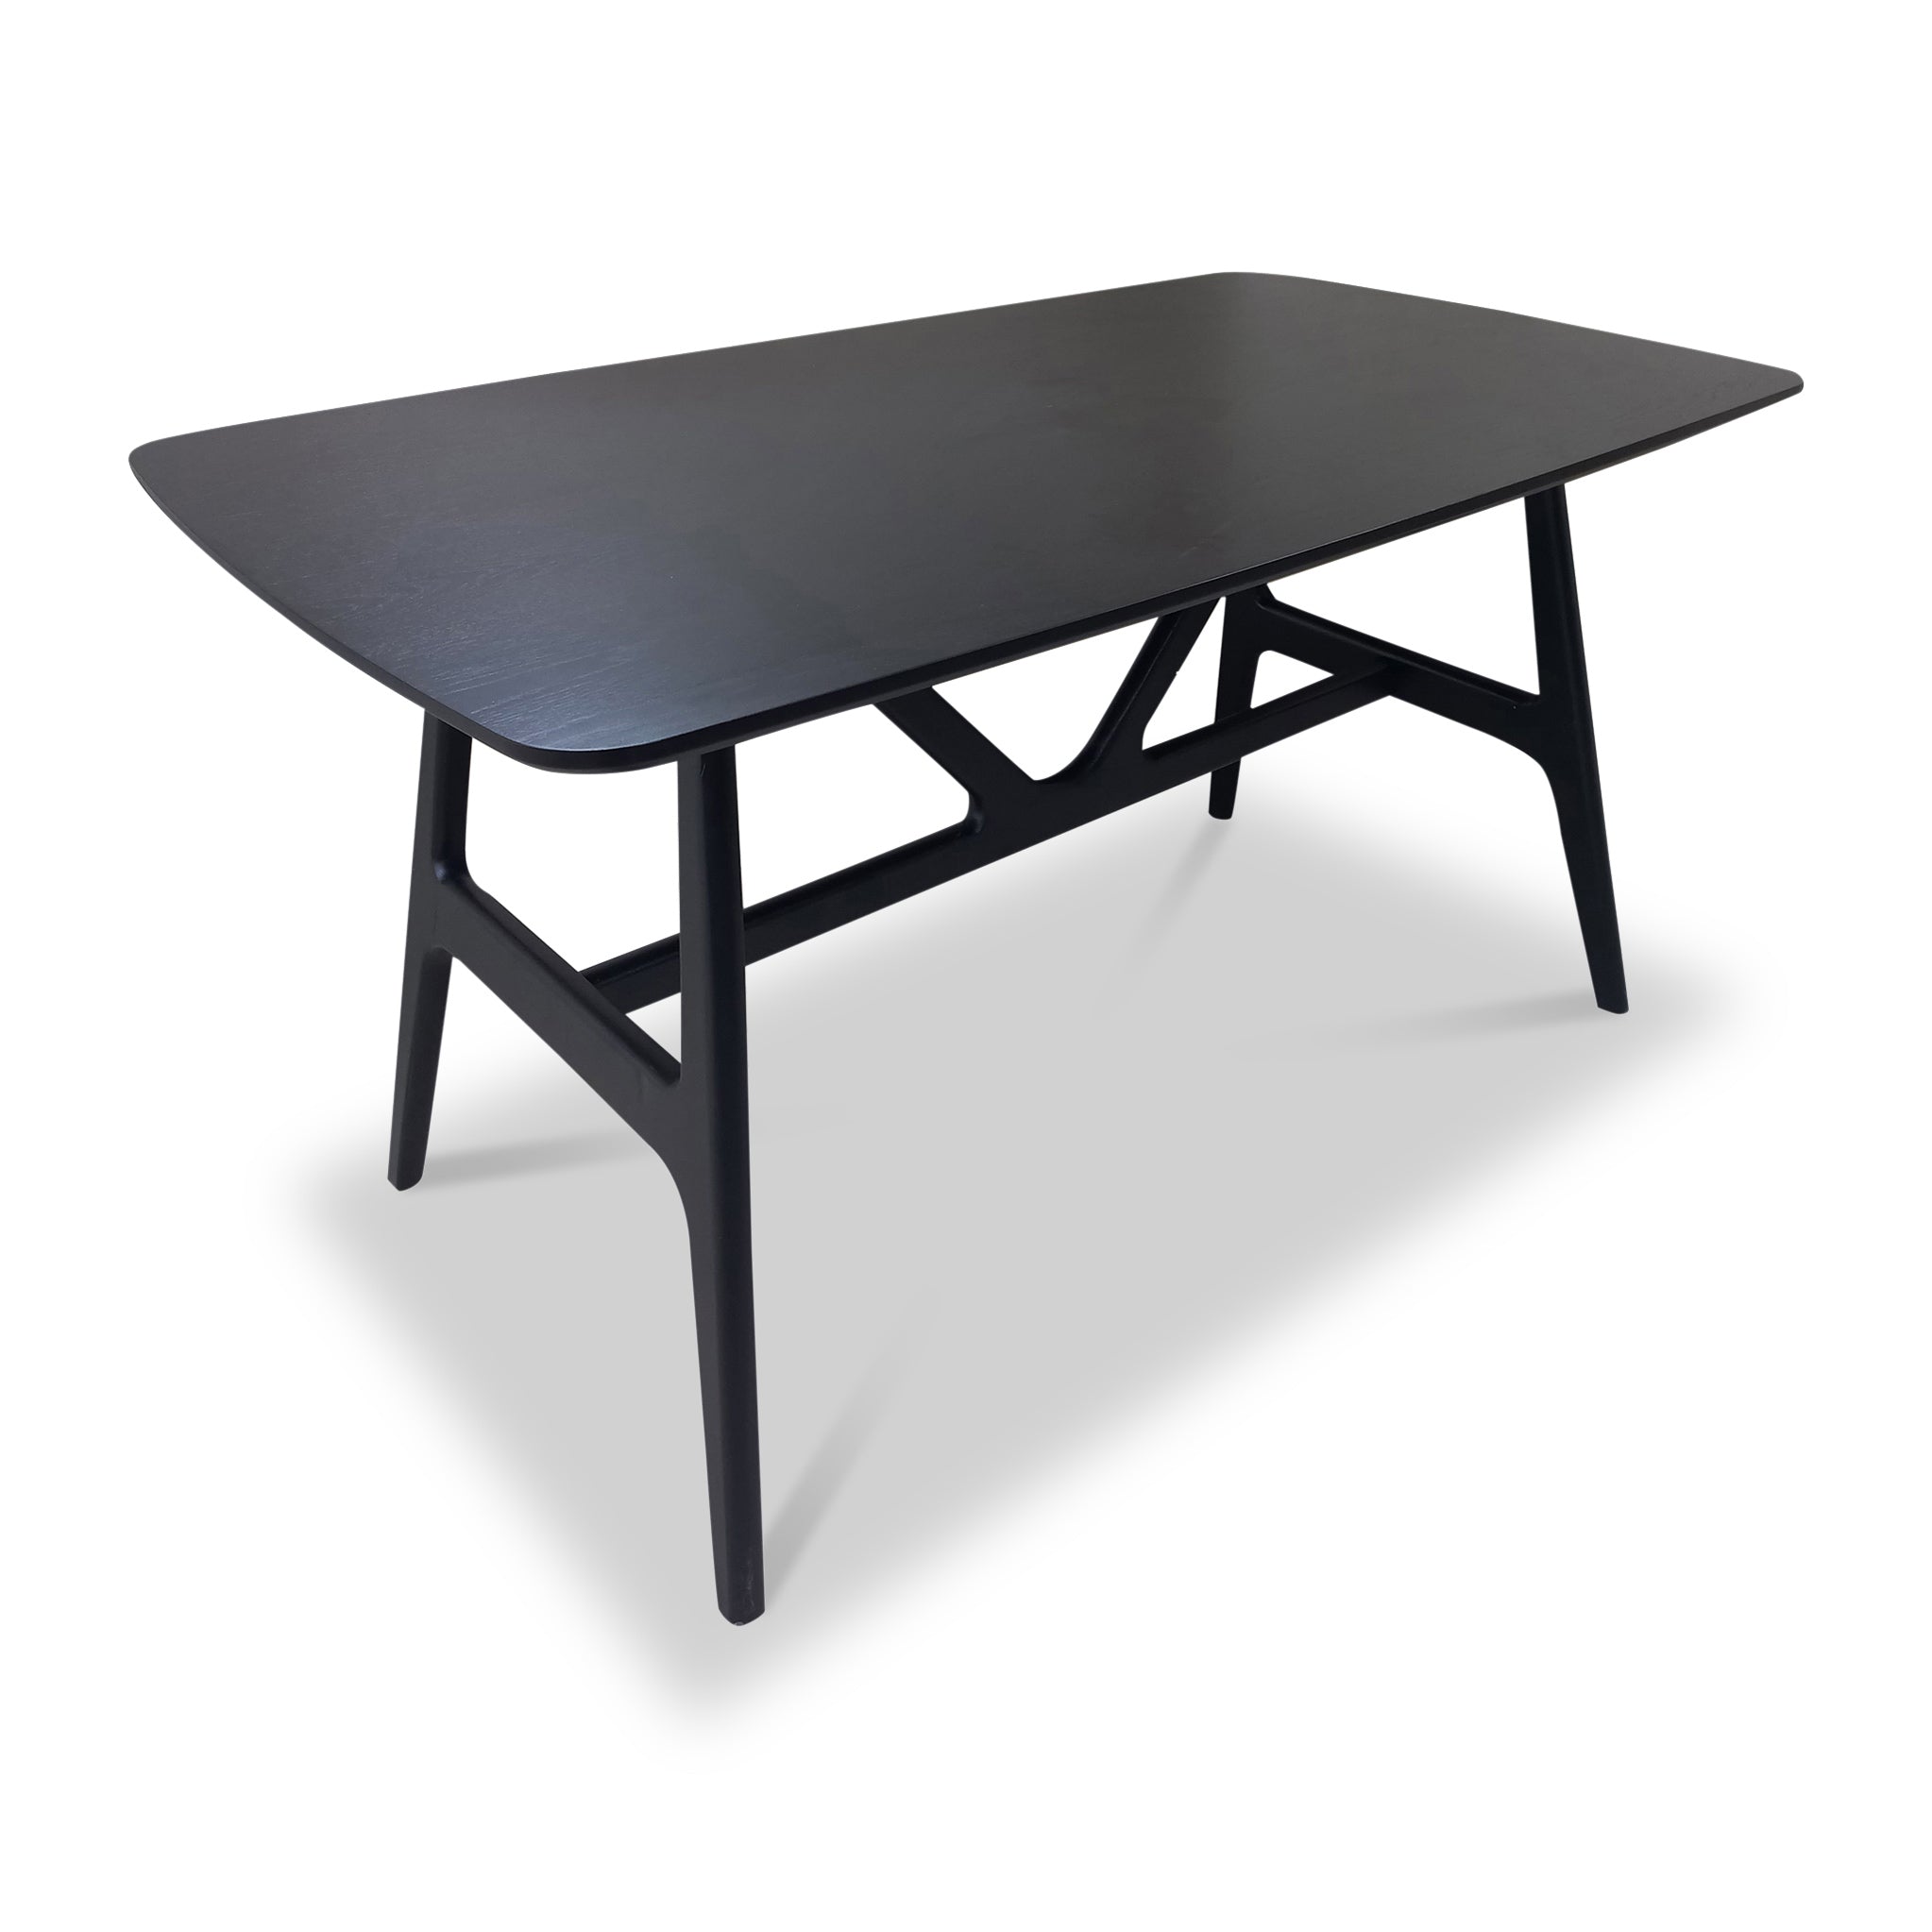 Jackson 135cm Black Rectangular Dining Table For 6 Roseland